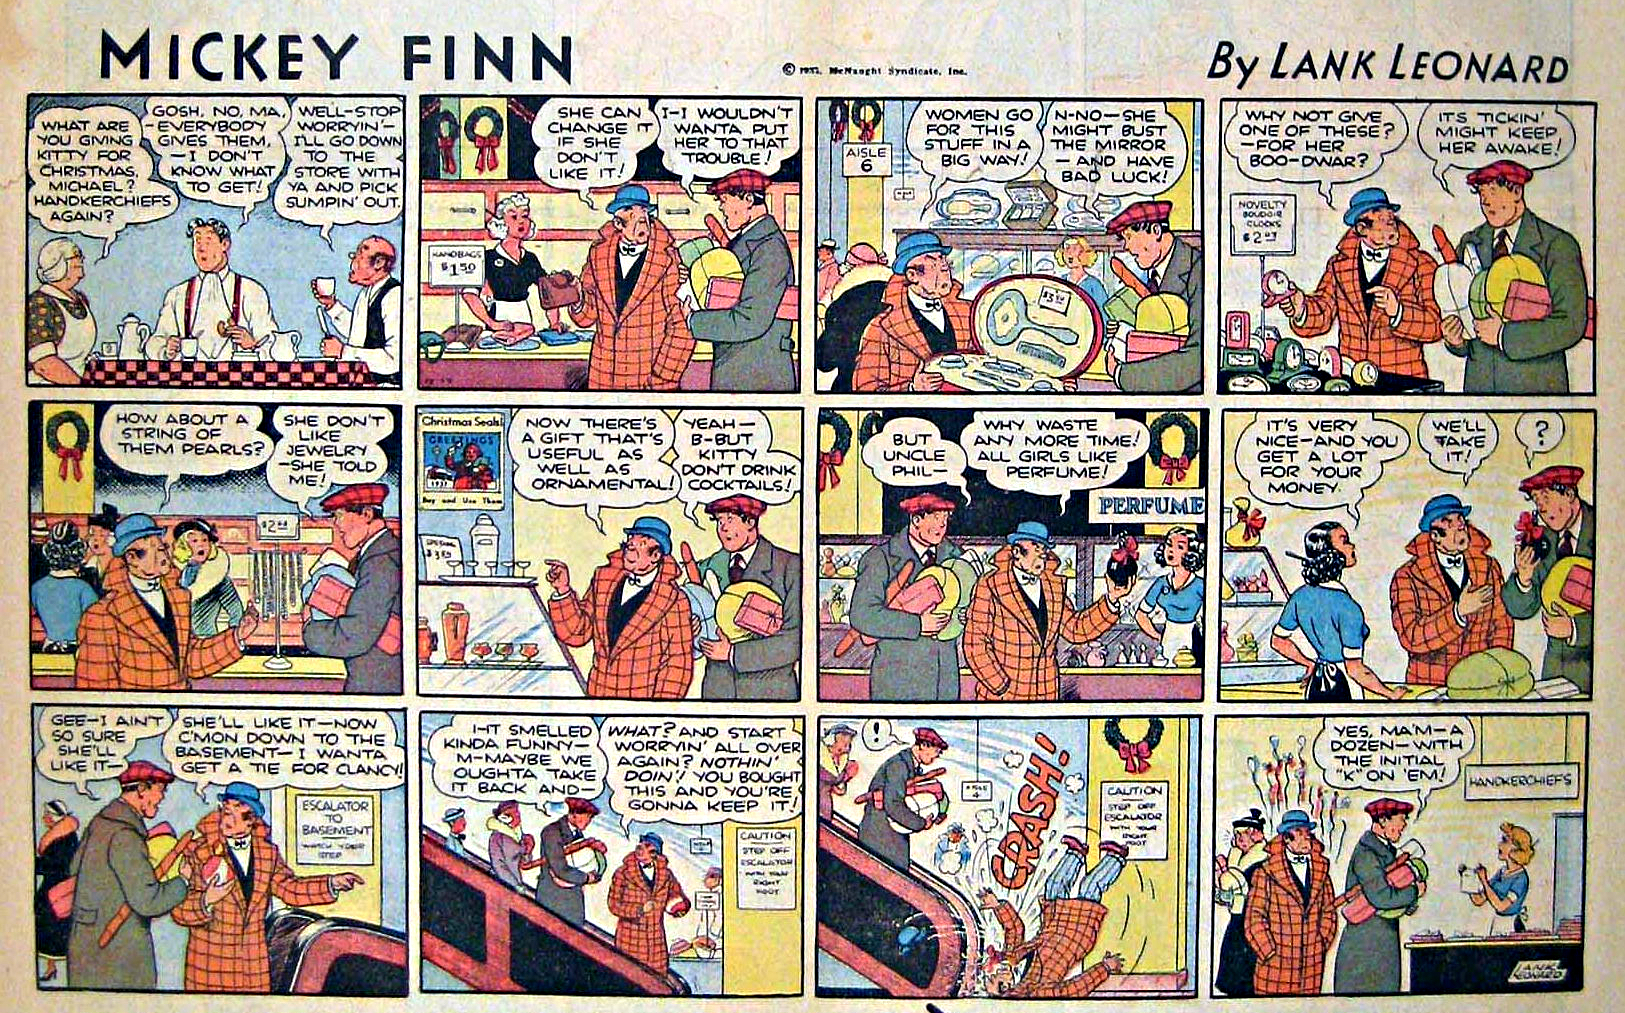 Mickey Finn, December 19, 1937